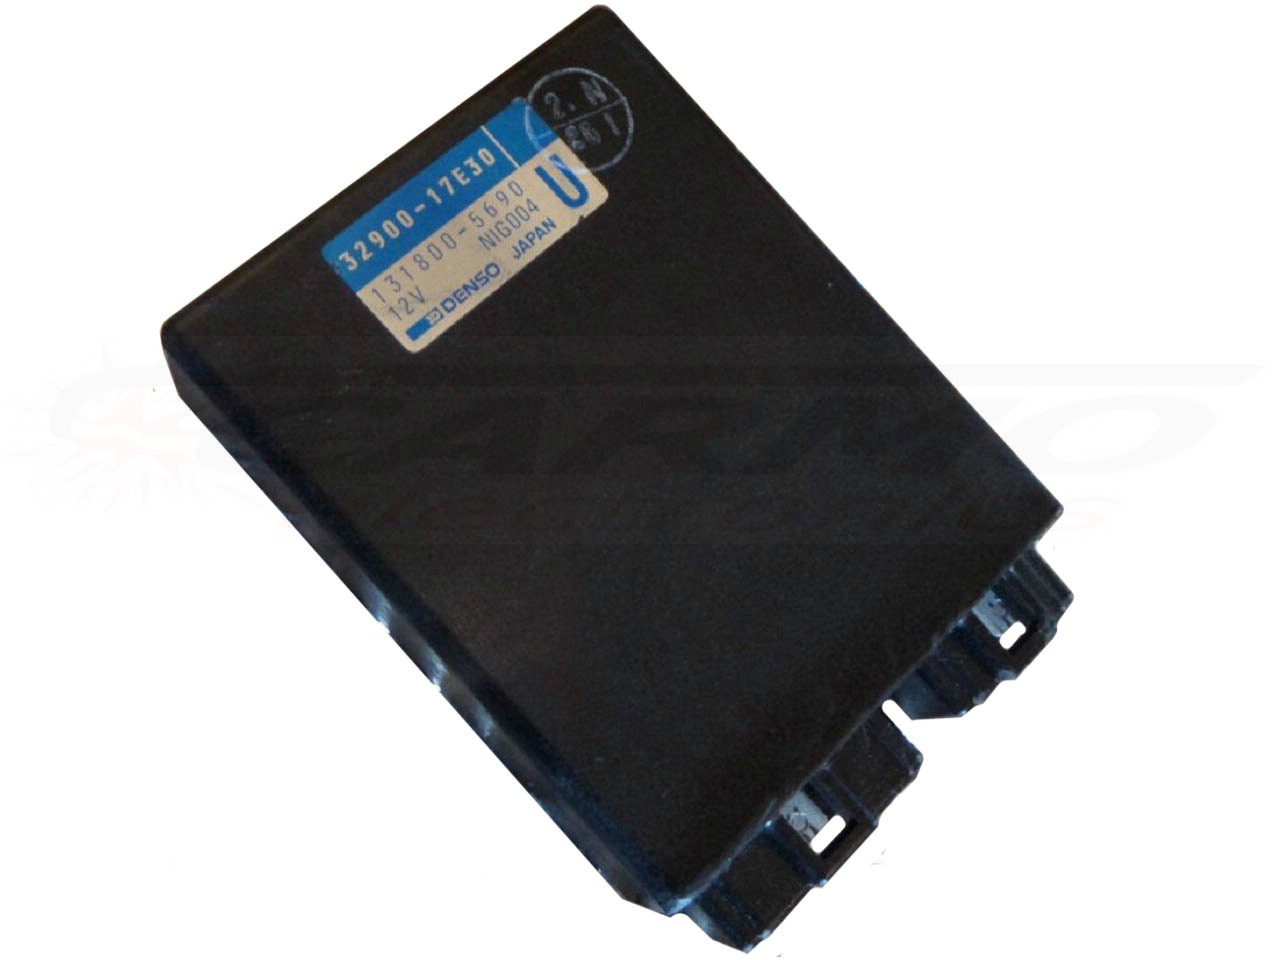 GSXR750W GSXR750WS TCI CDI dispositif de commande boîte noire (32900-17E)